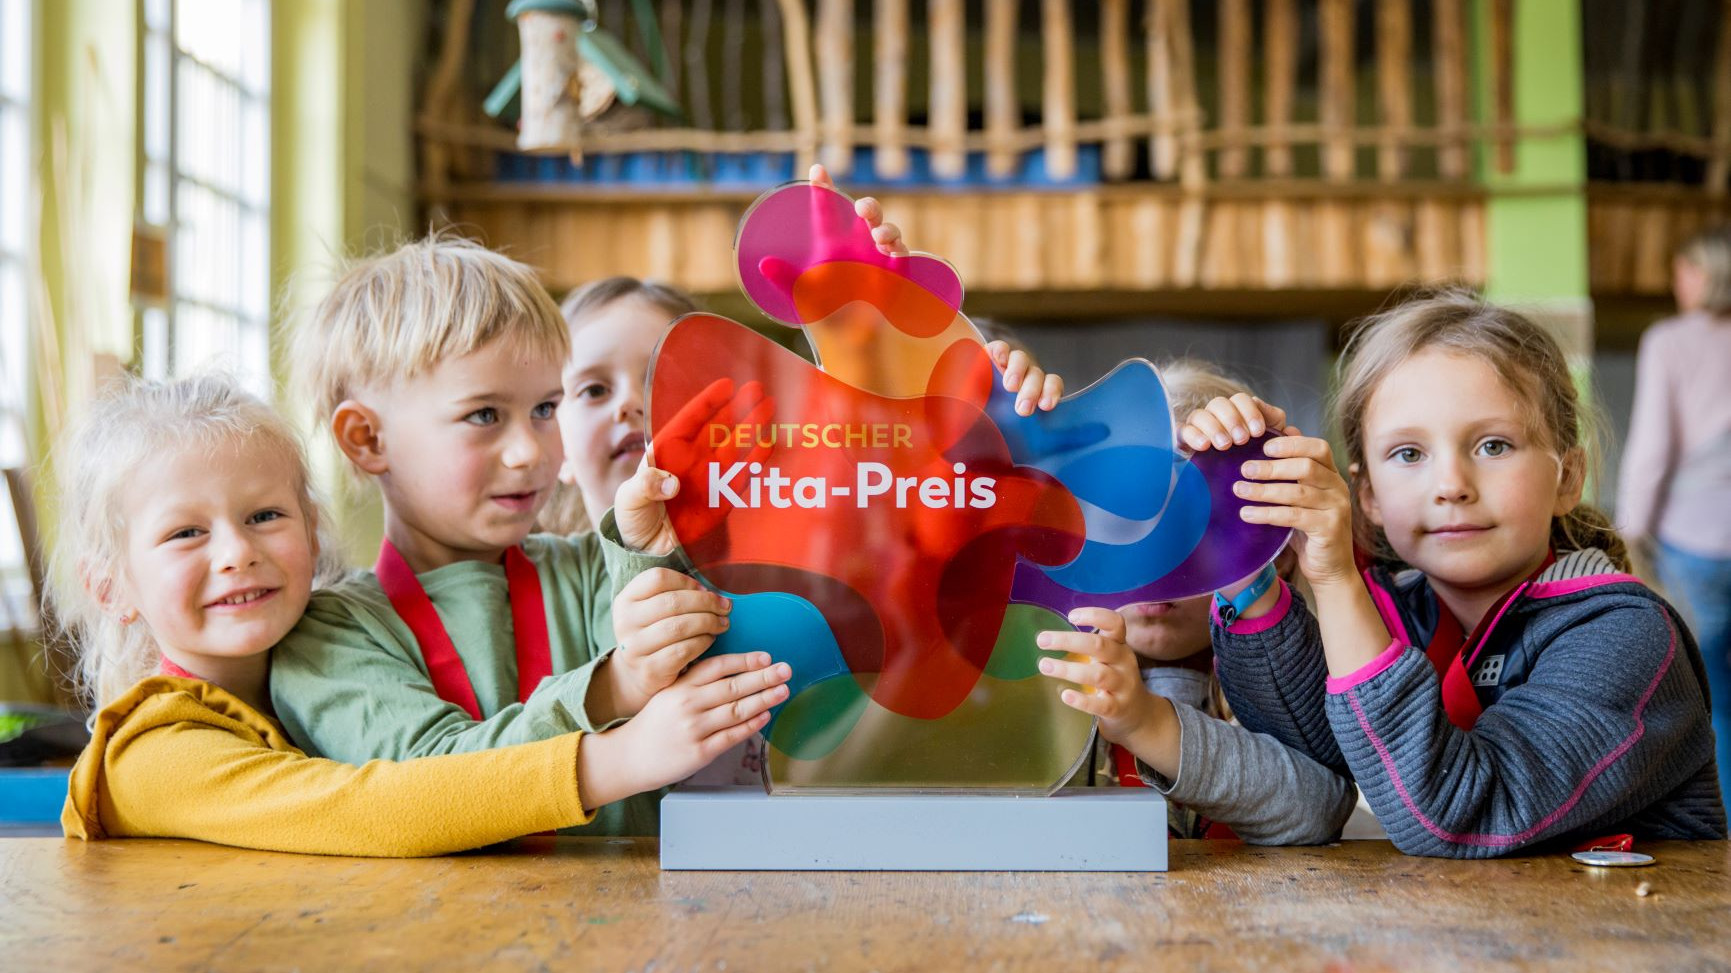 Kinder halten den deutschen Kitapreis in die Kamera.